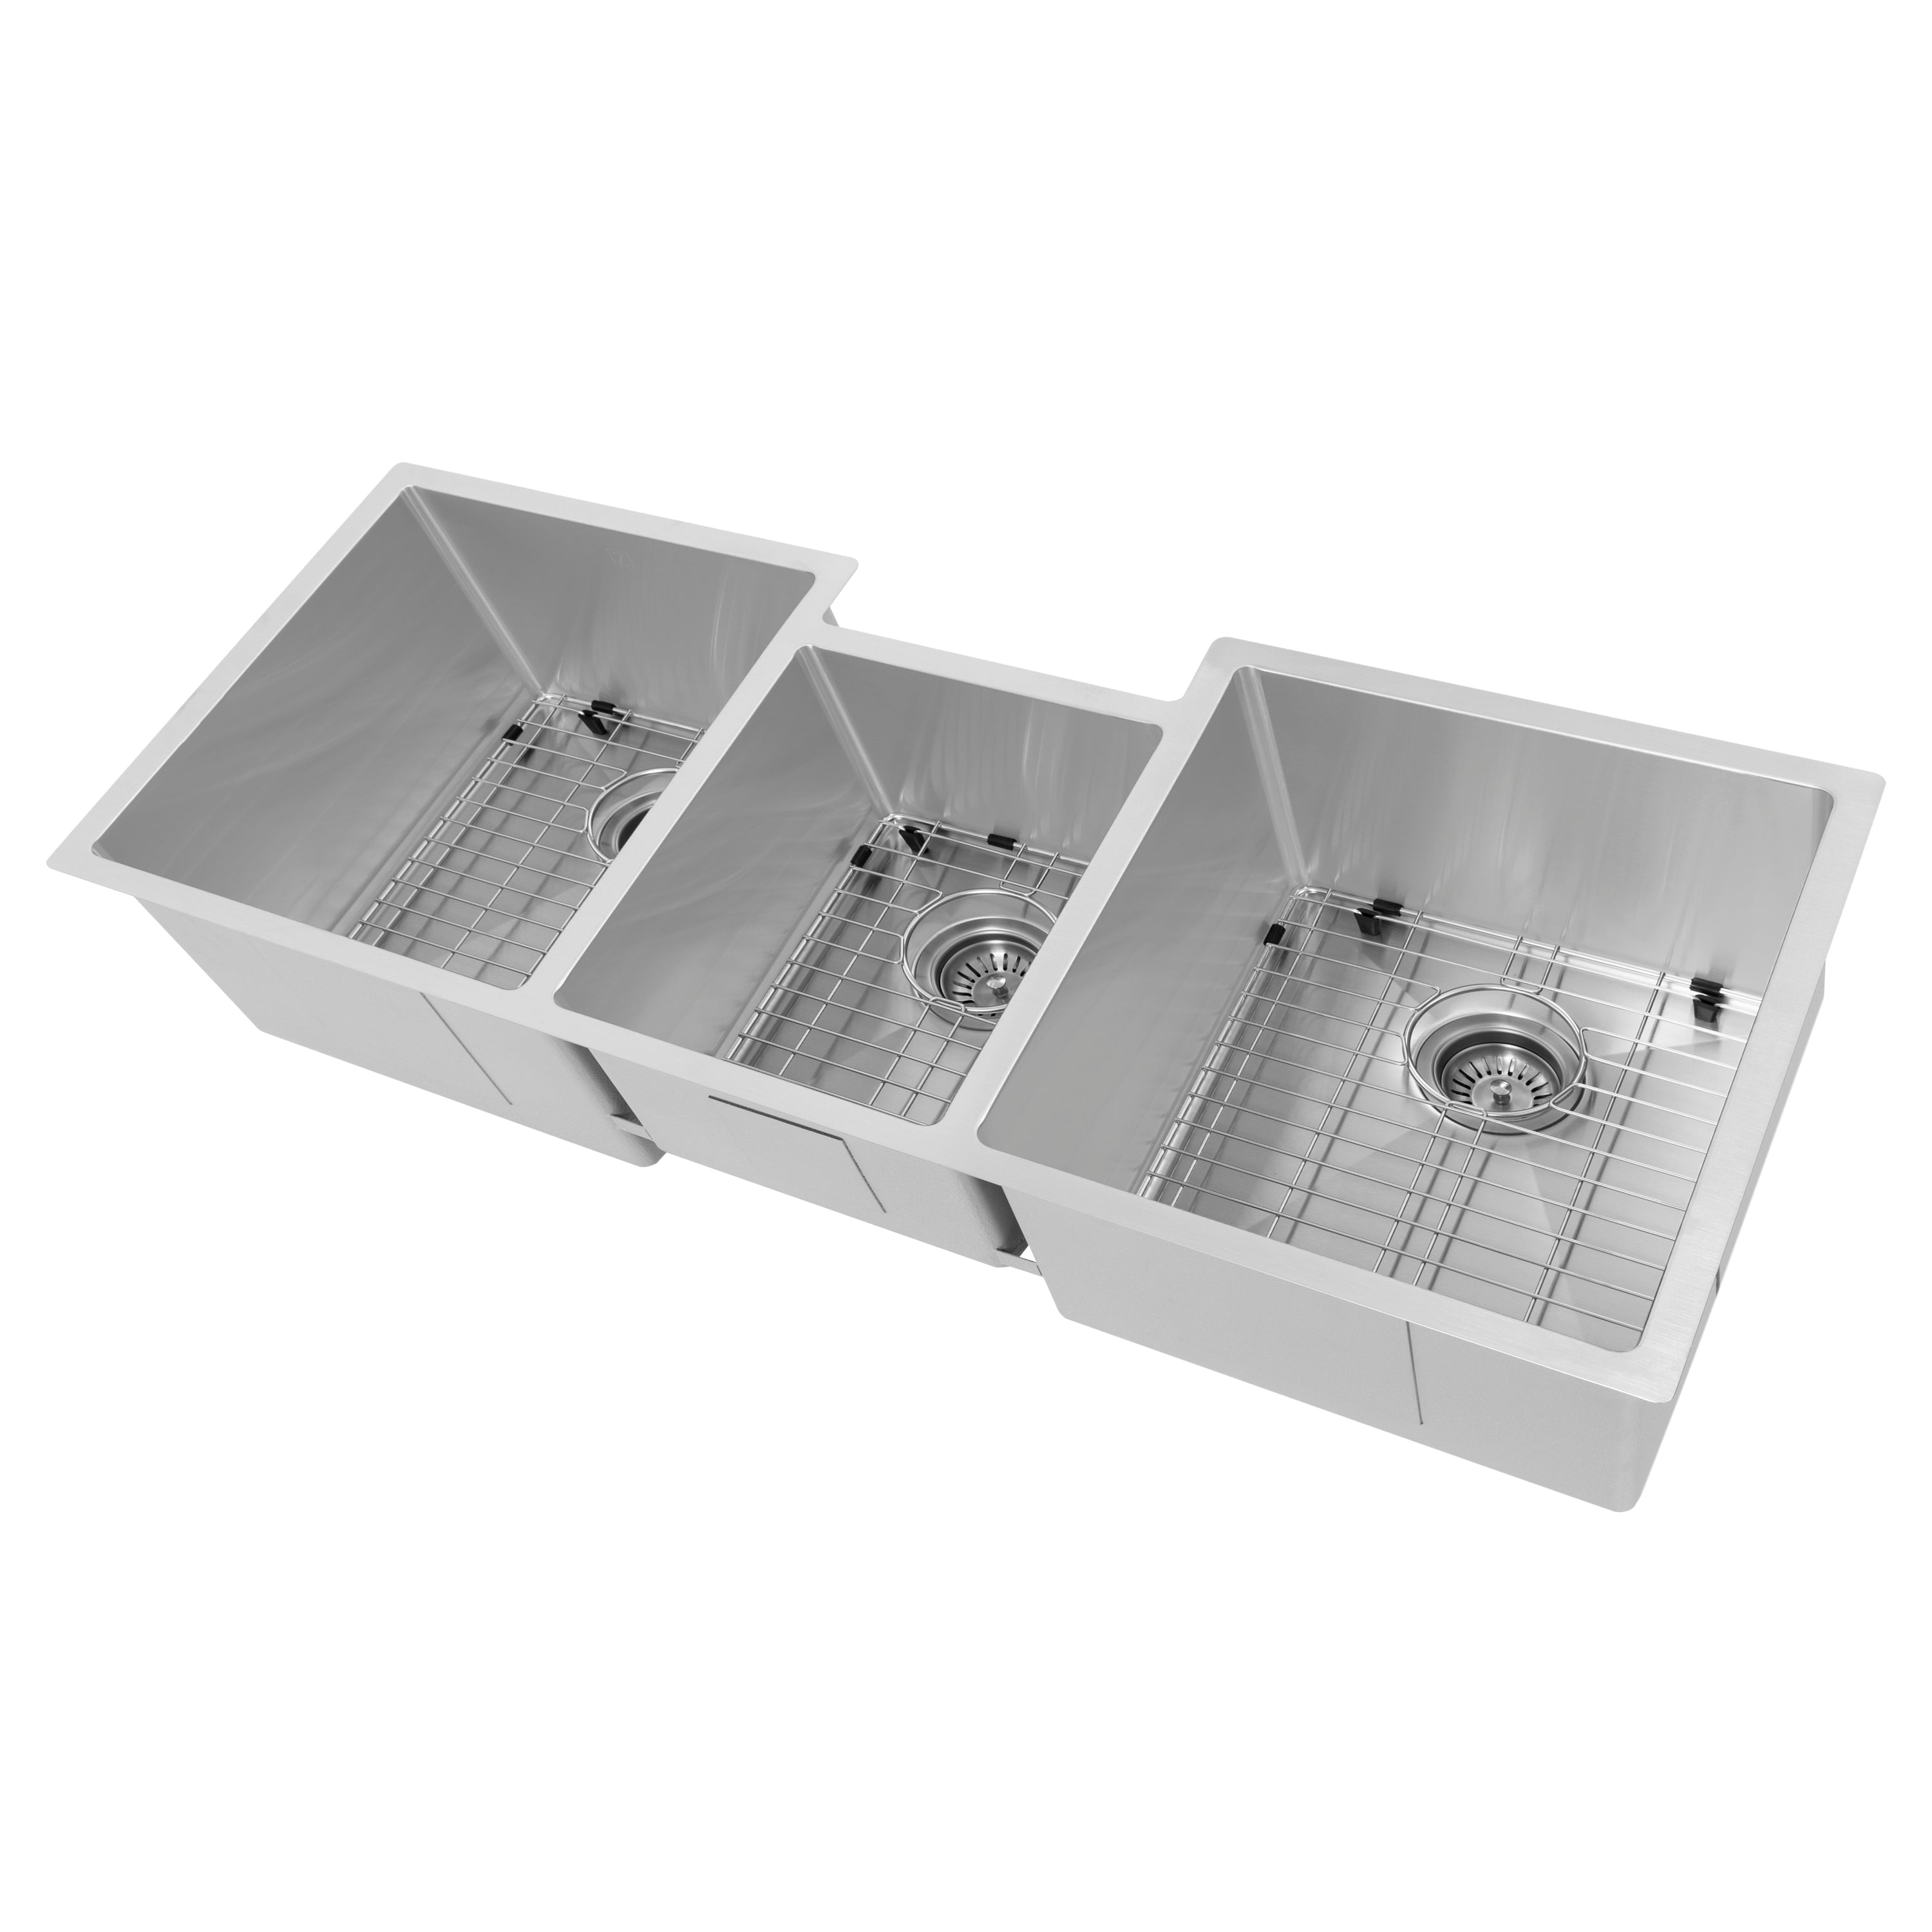 ZLINE 45" Breckenridge Undermount Triple Bowl Stainless Steel Kitchen Sink with Bottom Grid and Accessories (SLT-45)